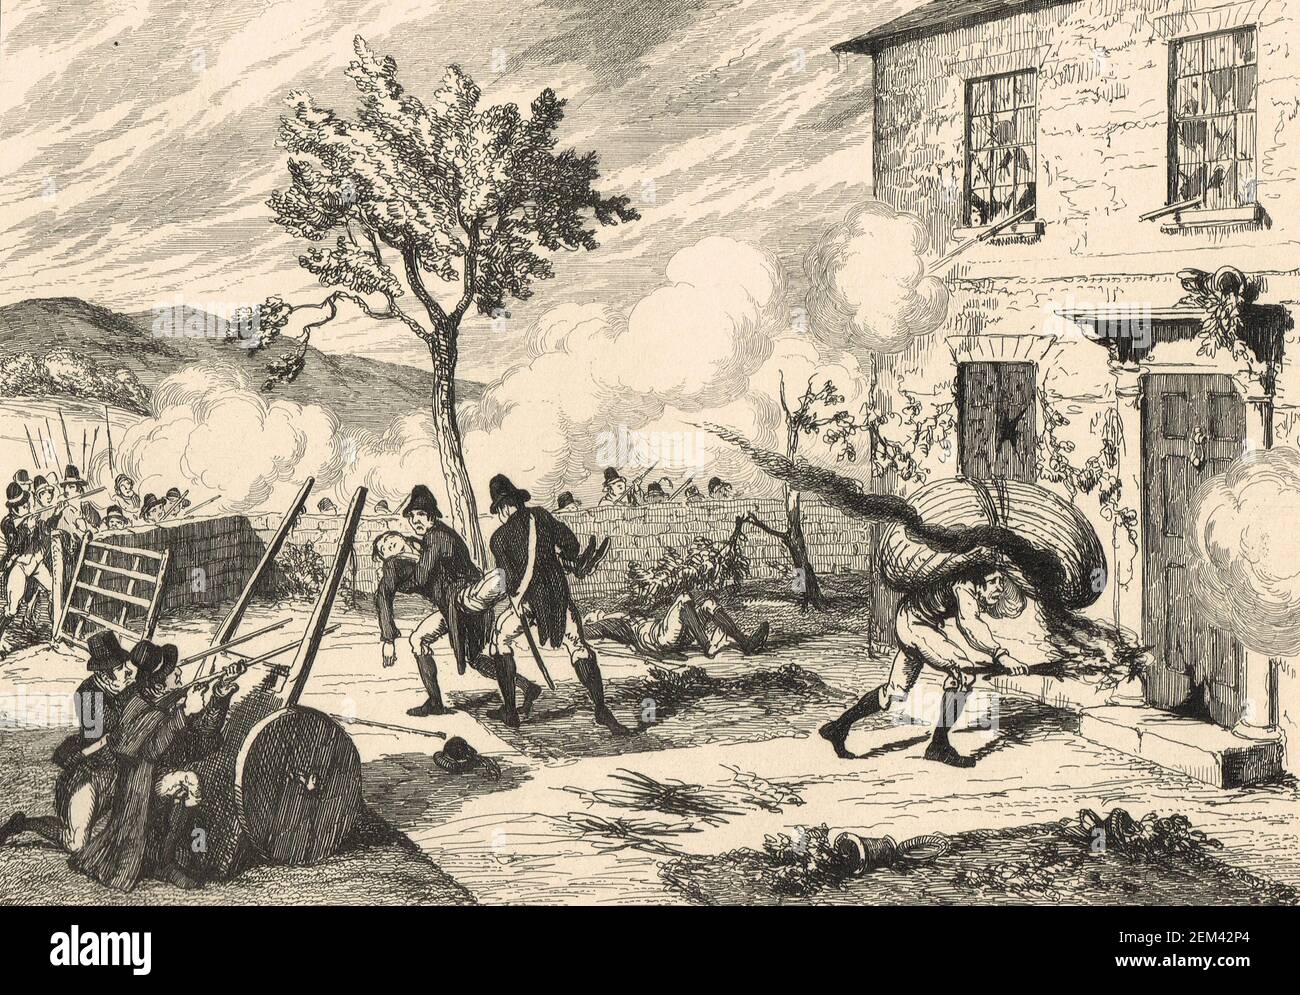 Attaque contre la maison du capitaine Chamney. Les forces rebelles attaquent la maison du capitaine Joseph Chamney, près de Ballyraheen Hill, comté de Wicklow, le 2 juillet 1798, pendant la rébellion irlandaise de 1798 Banque D'Images